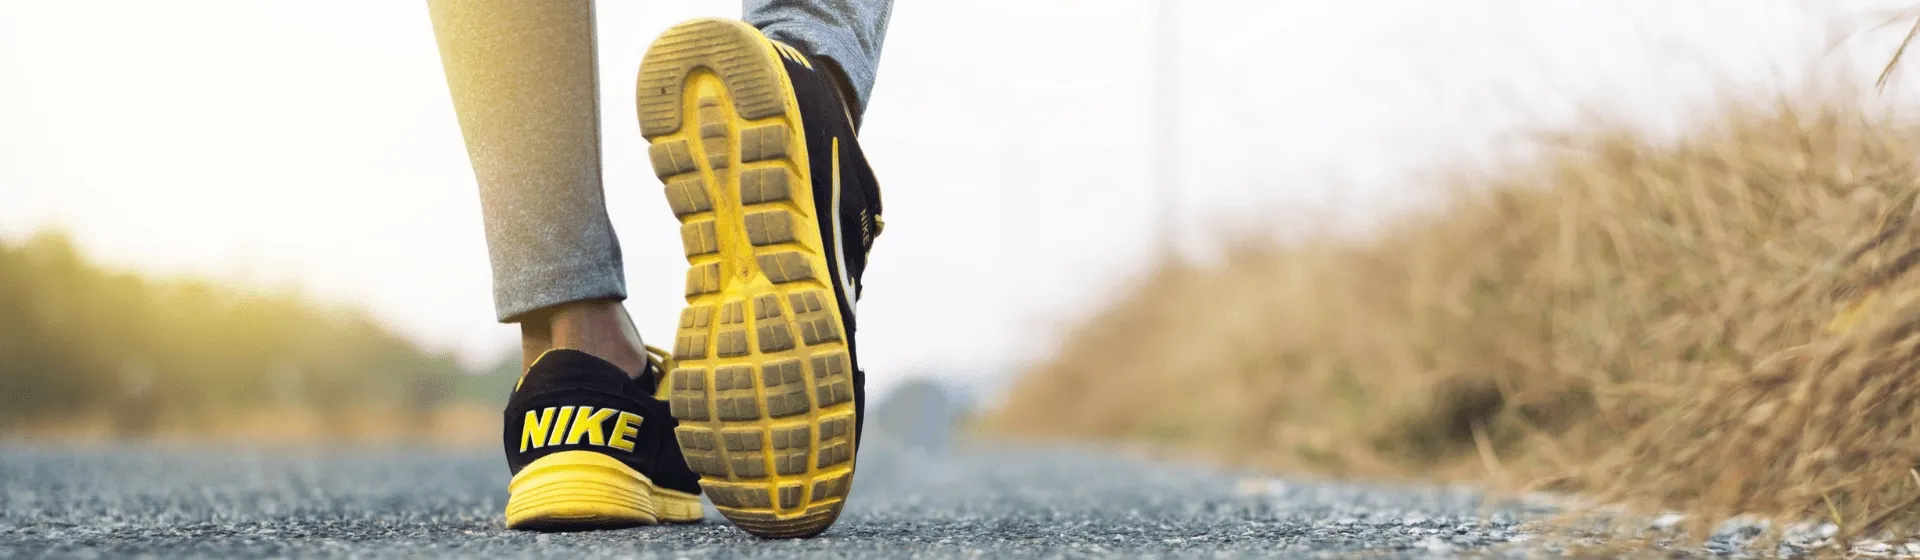 Pessoa caminhando com tênis Nike para corrida no asfalto